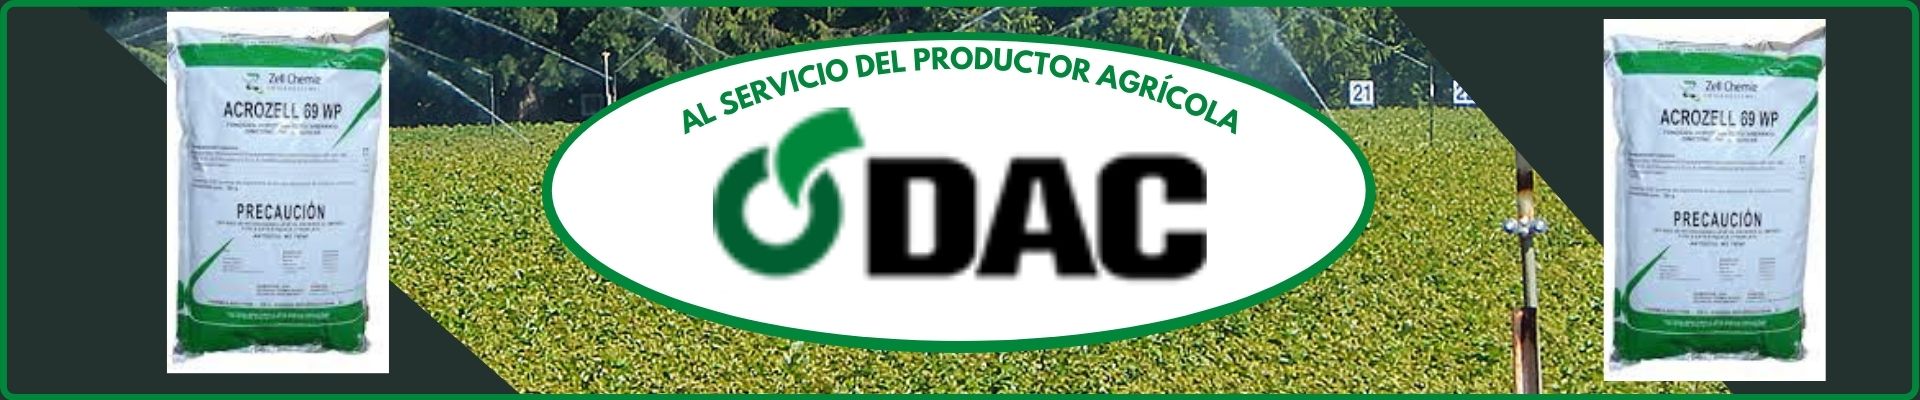 DAC agroshow banner